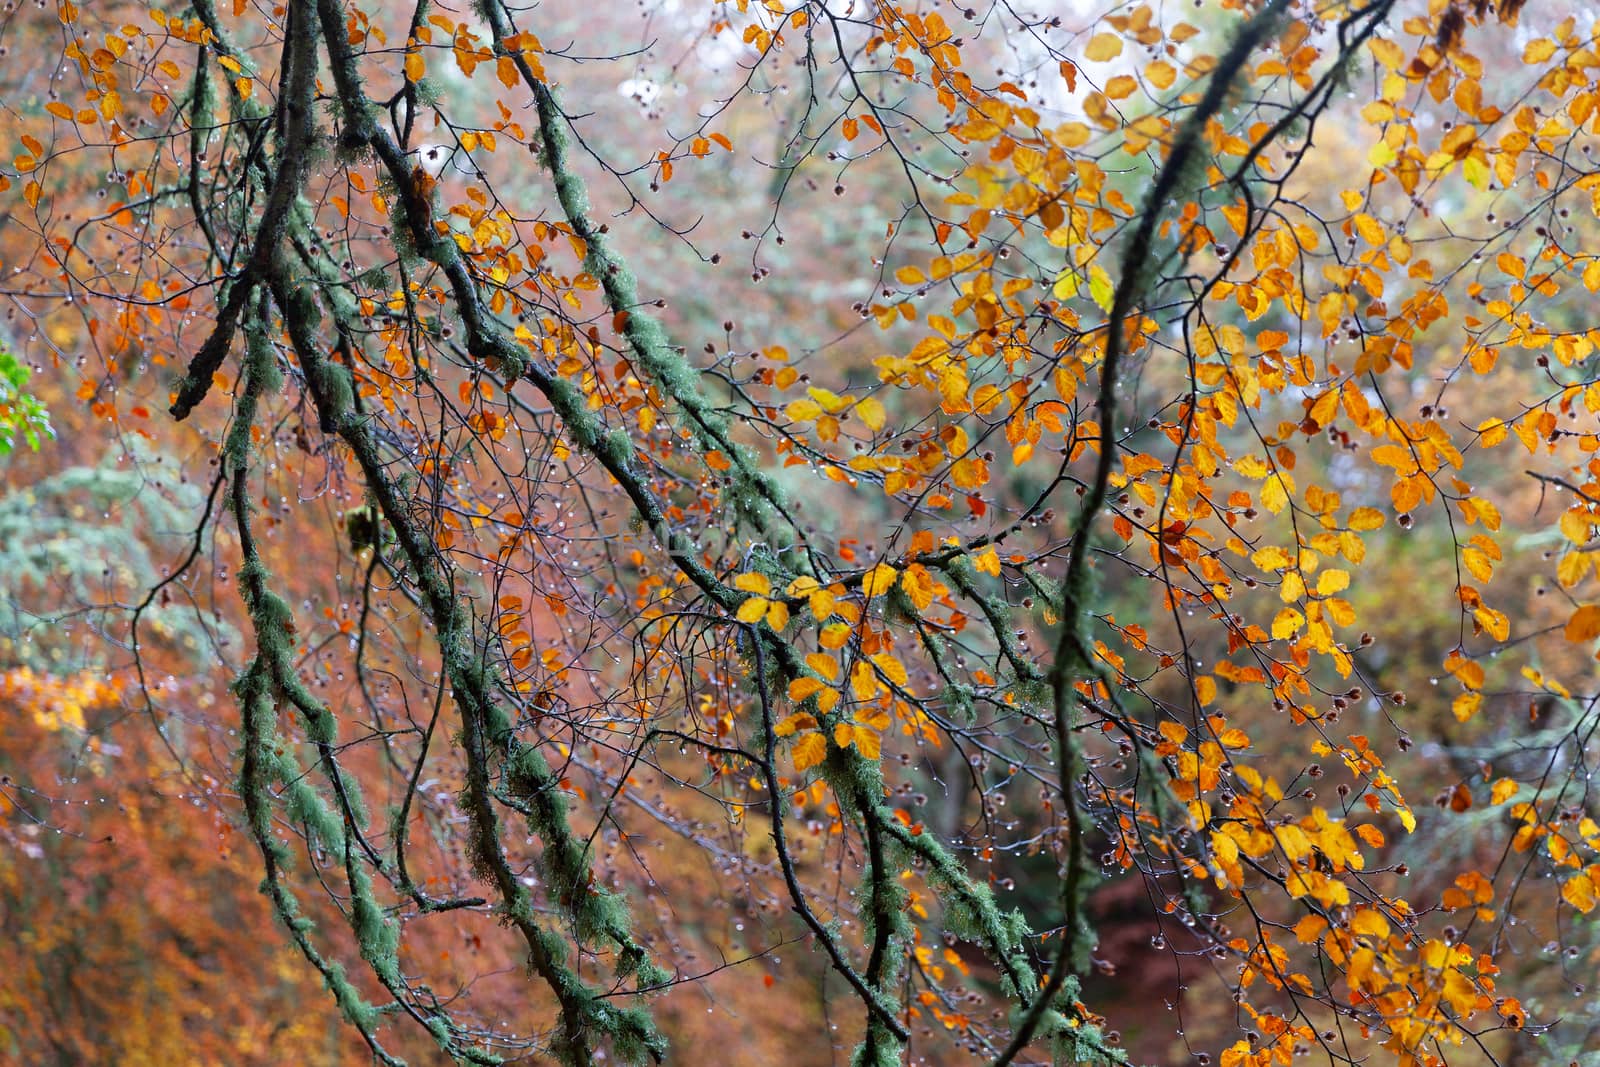 Path in Autumn forest, Loch Insh, Kincraig, Scotland, UK by vlad-m